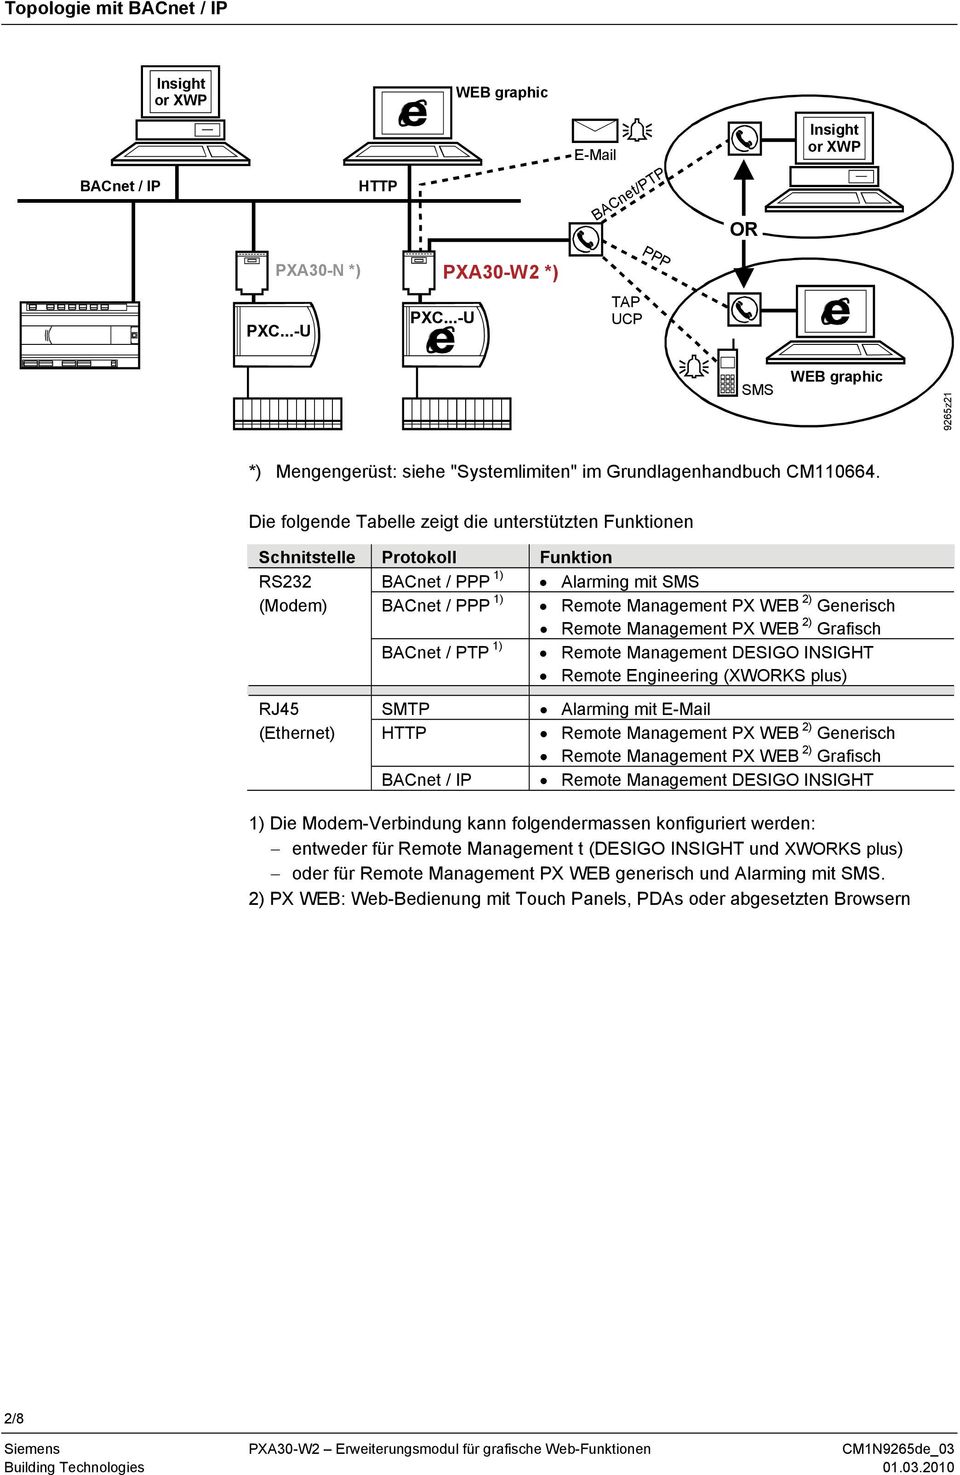 Die folgende Tabelle zeigt die unterstützten Funktionen Schnitstelle Protokoll Funktion RS232 BACnet / PPP 1) Alarming mit SMS (Modem) BACnet / PPP 1) Remote Management PX WEB 2) Generisch Remote